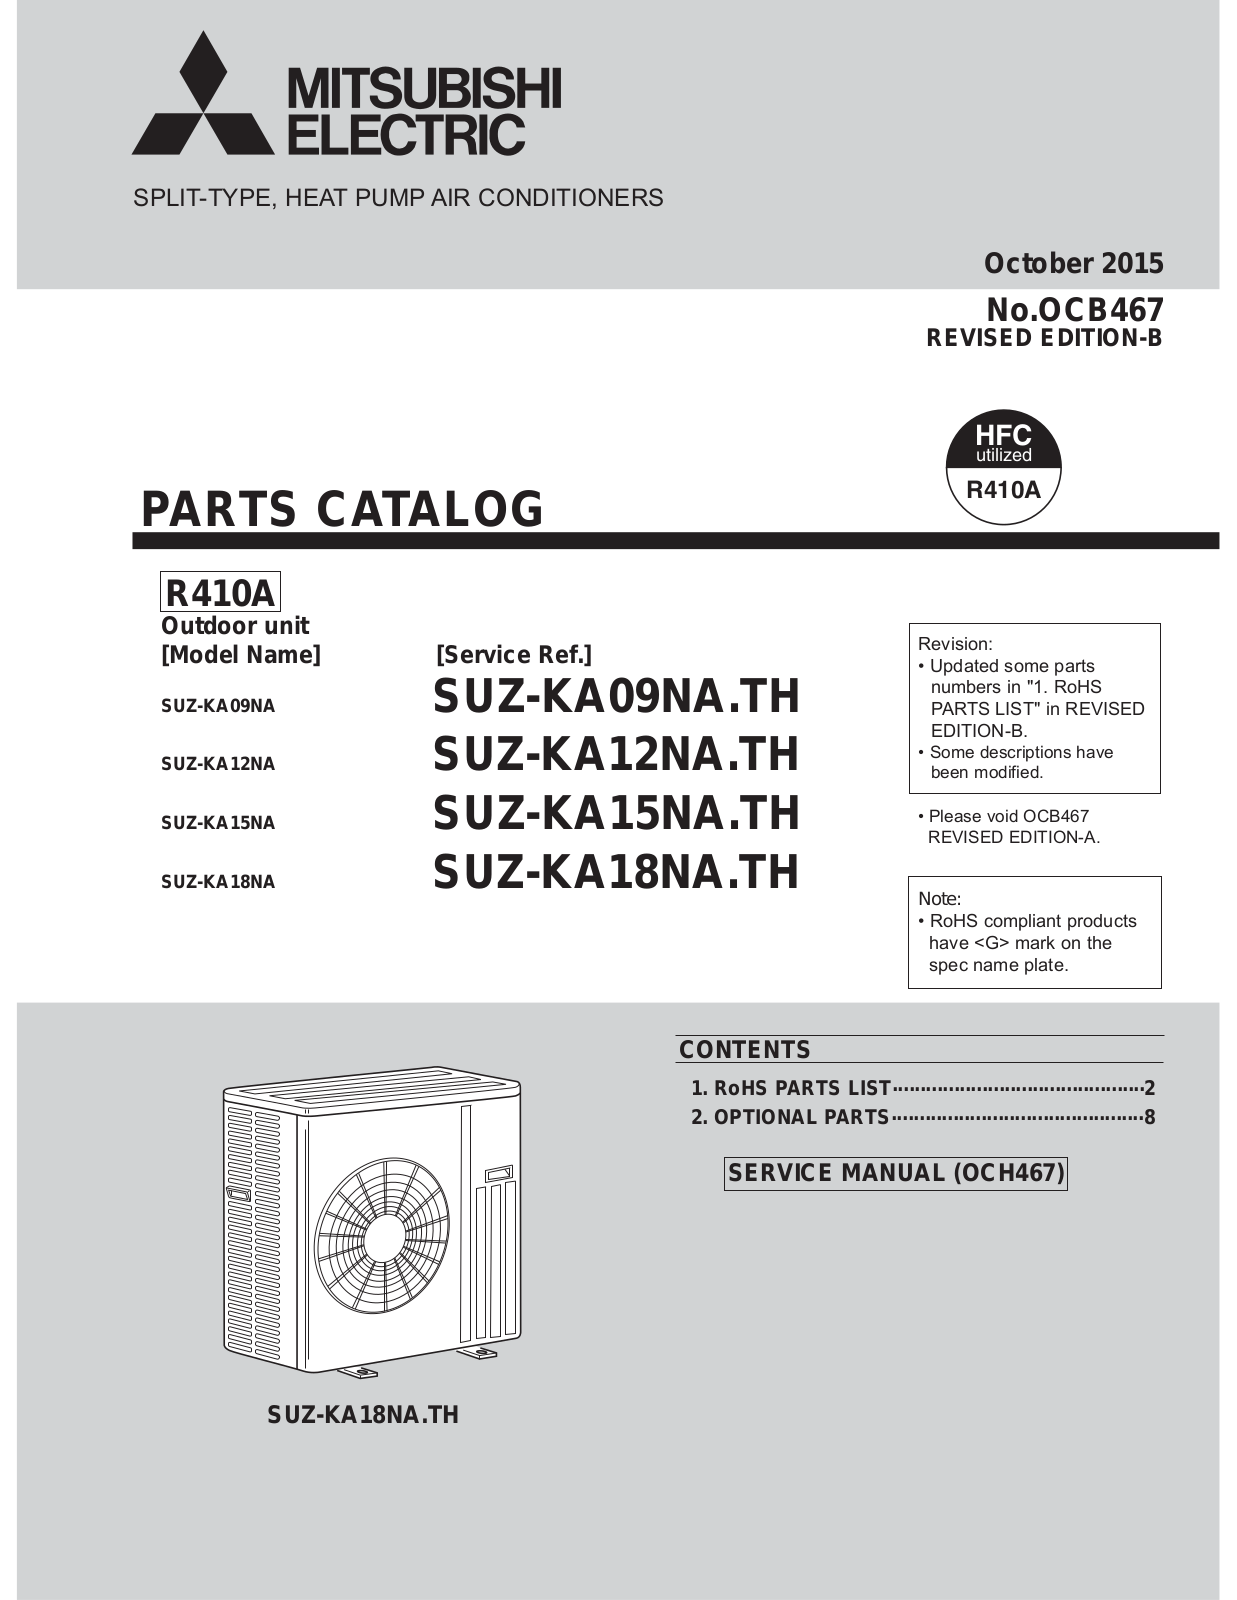 Mitsubishi Electronics UZ-KA09NA, SUZ-KA09NA.TH, SUZ-KA12NA, SUZ-KA12NA.TH, SUZ-KA15NA User Manual